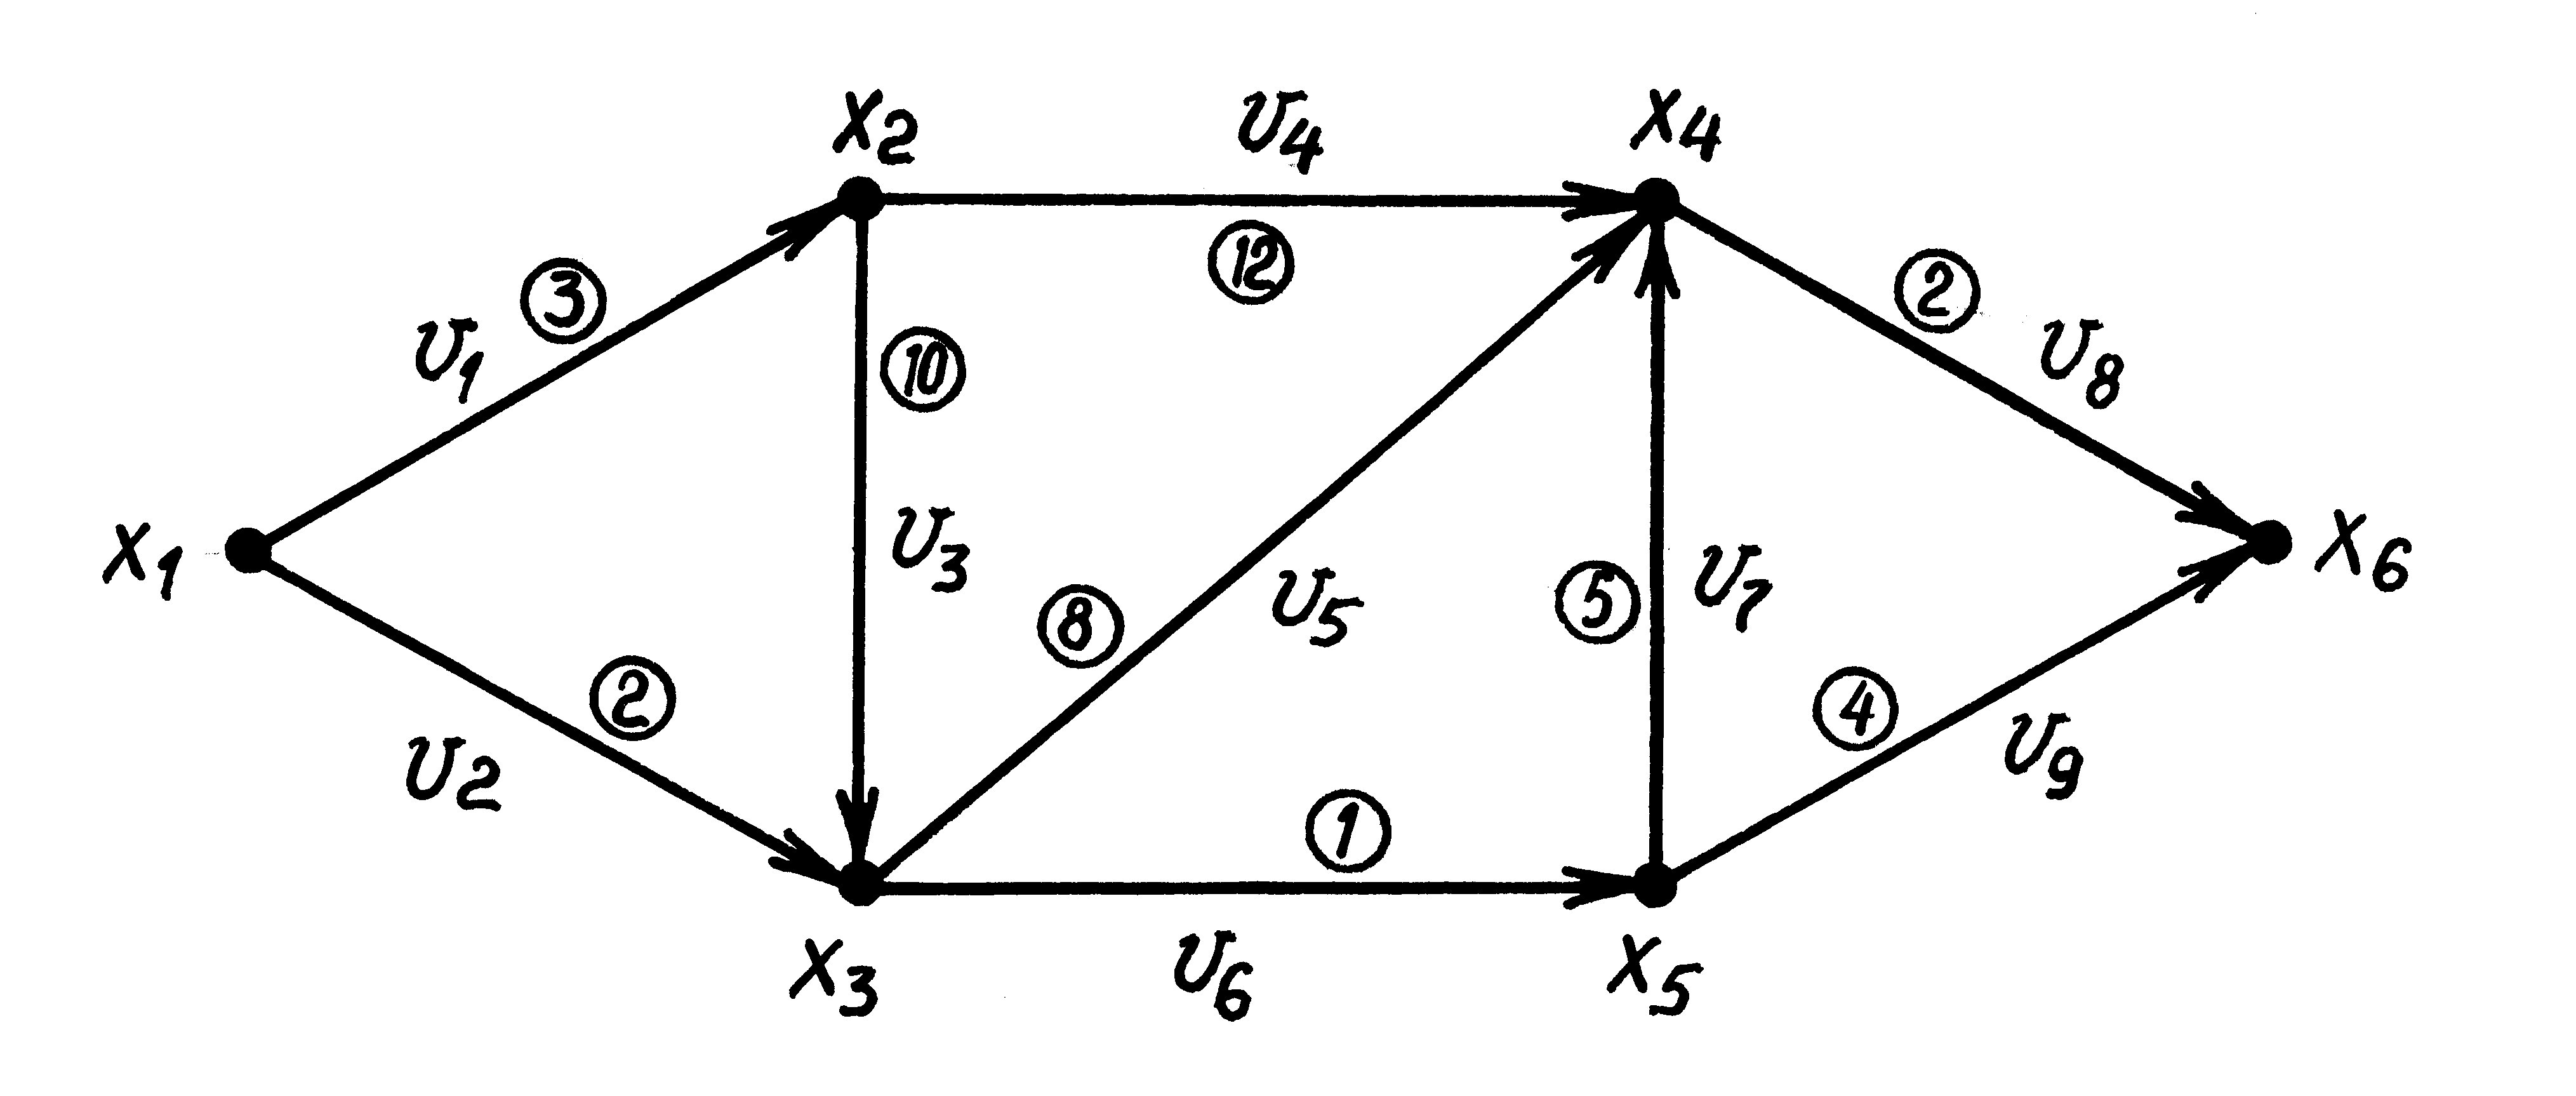 Найти максимальный поток. 1.6 Поточная сеть. Пример максимального потока в транспортной сети примеры. Задачи на определение максимального потока схема.